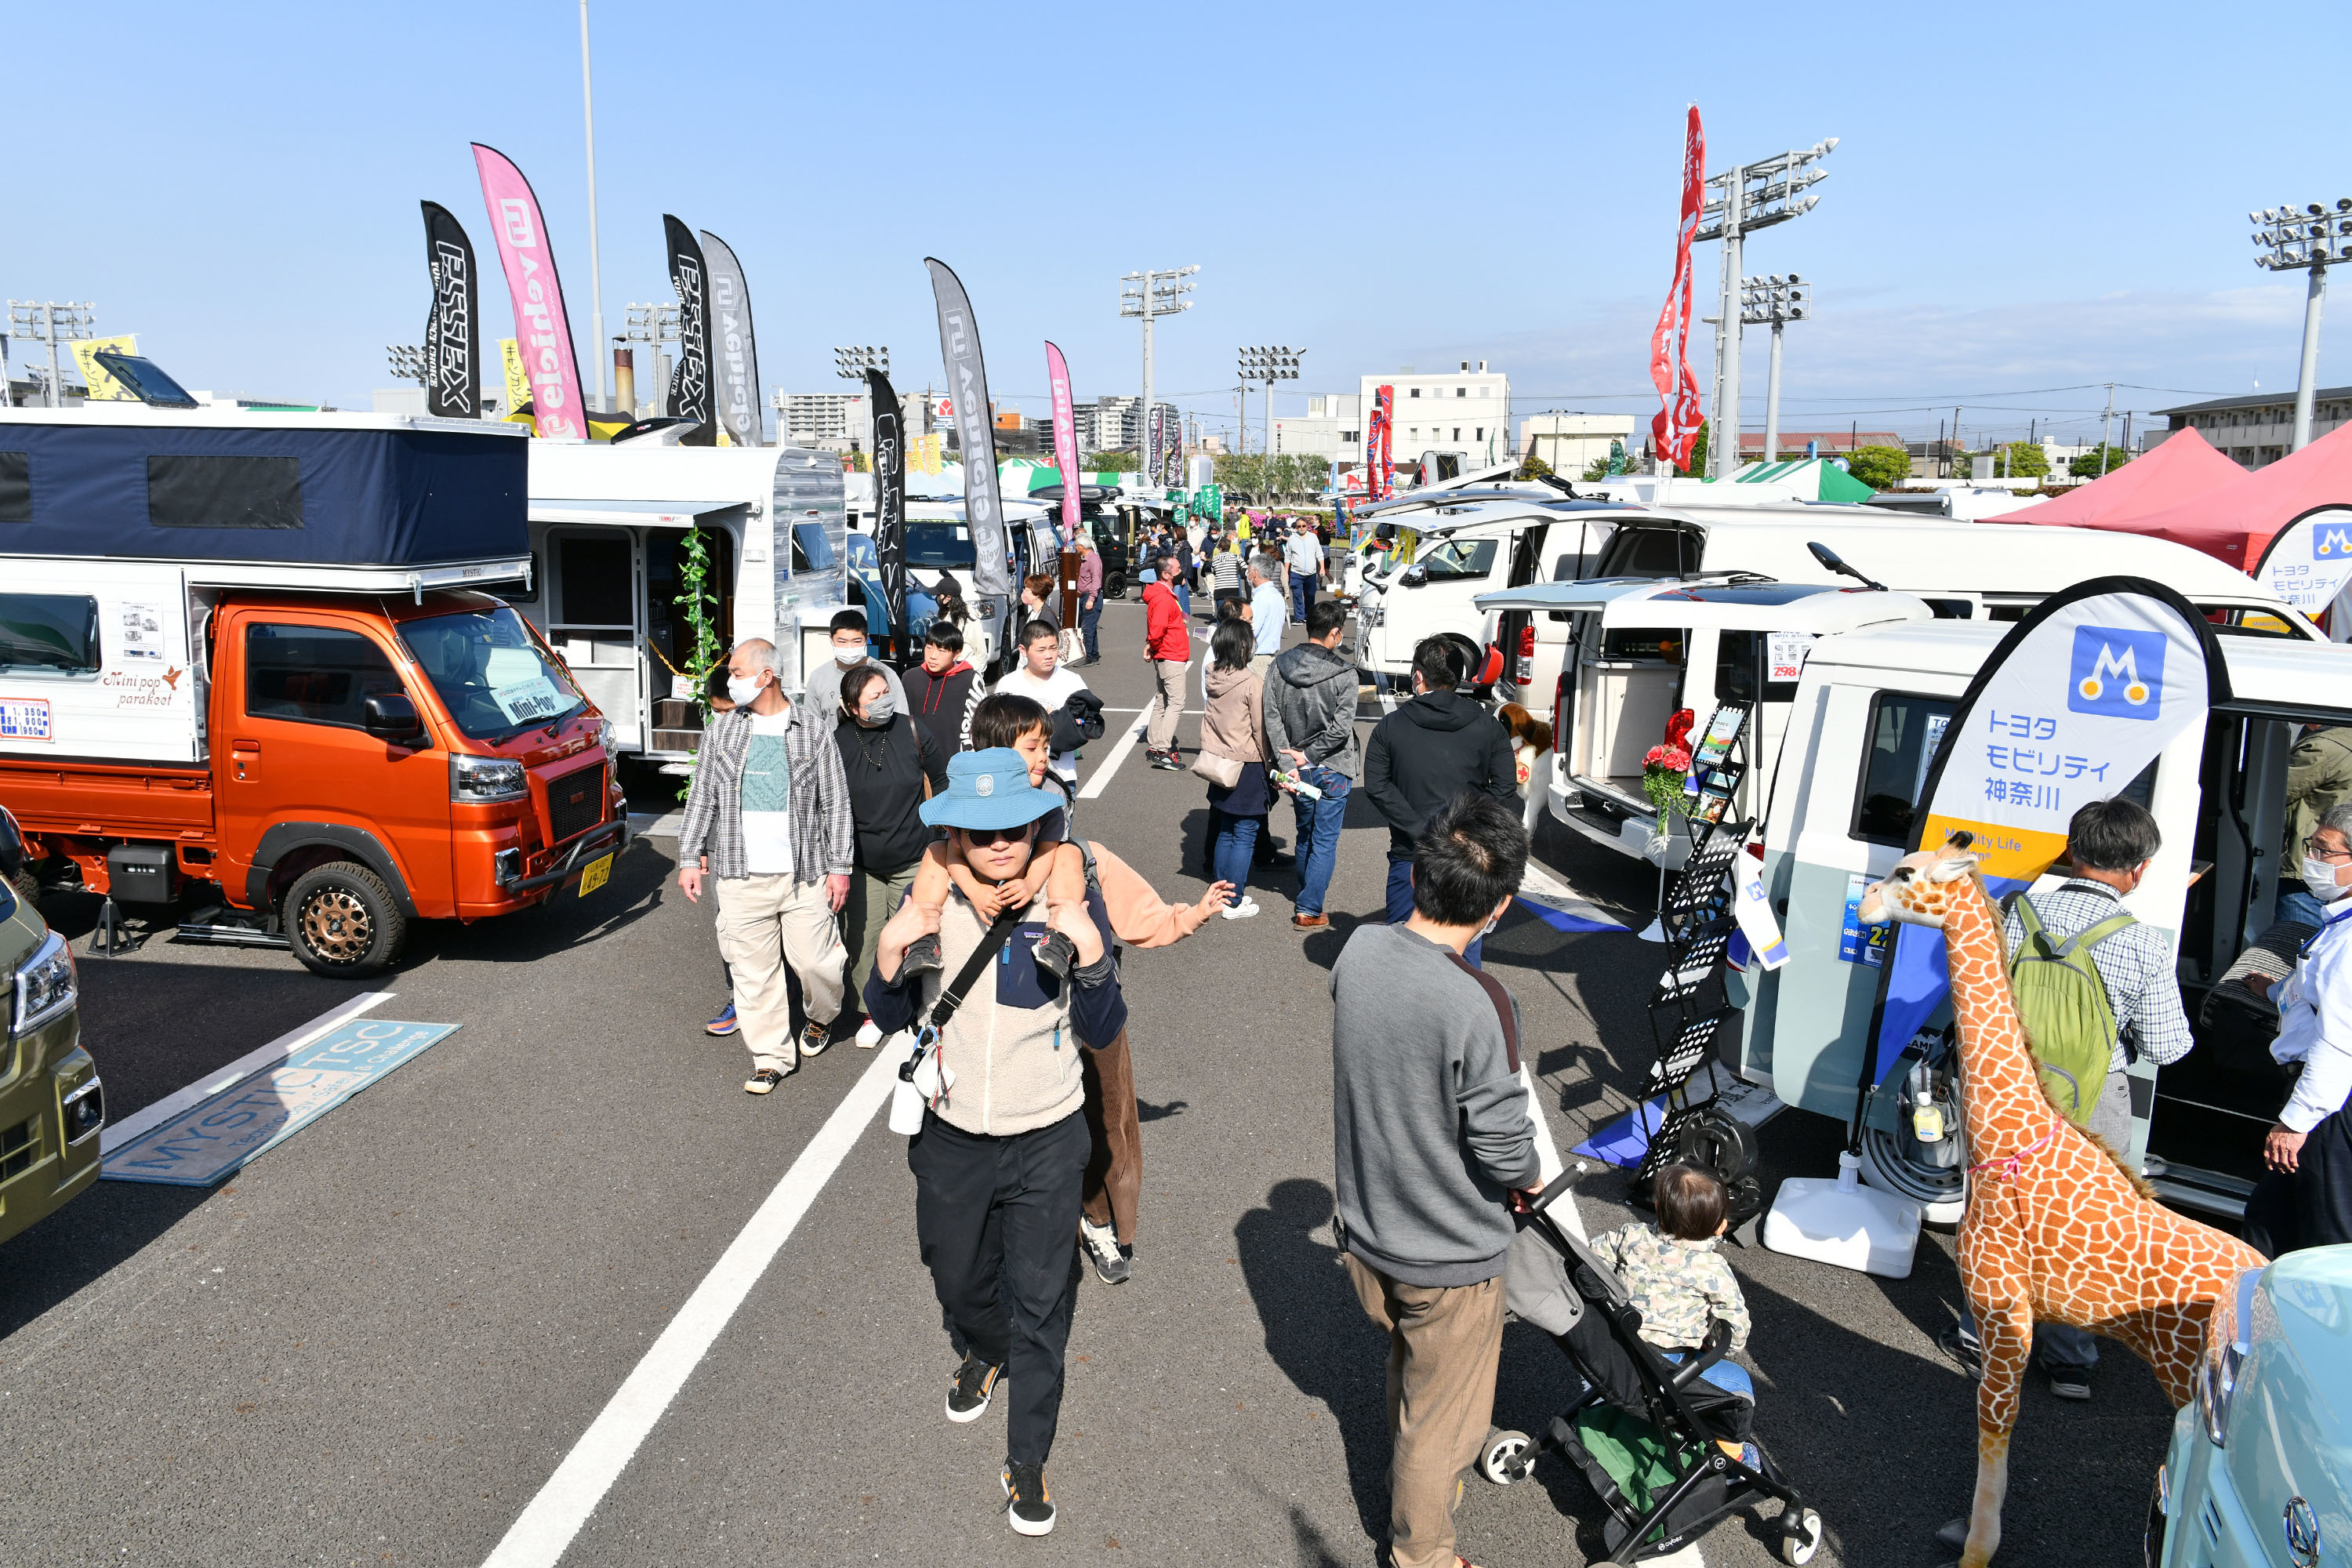 まもなく開催！　9月2日・3日
「第27回神奈川キャンピングカーフェアin 川崎競馬場」
全国から約120台のキャンピングカーが大集結！